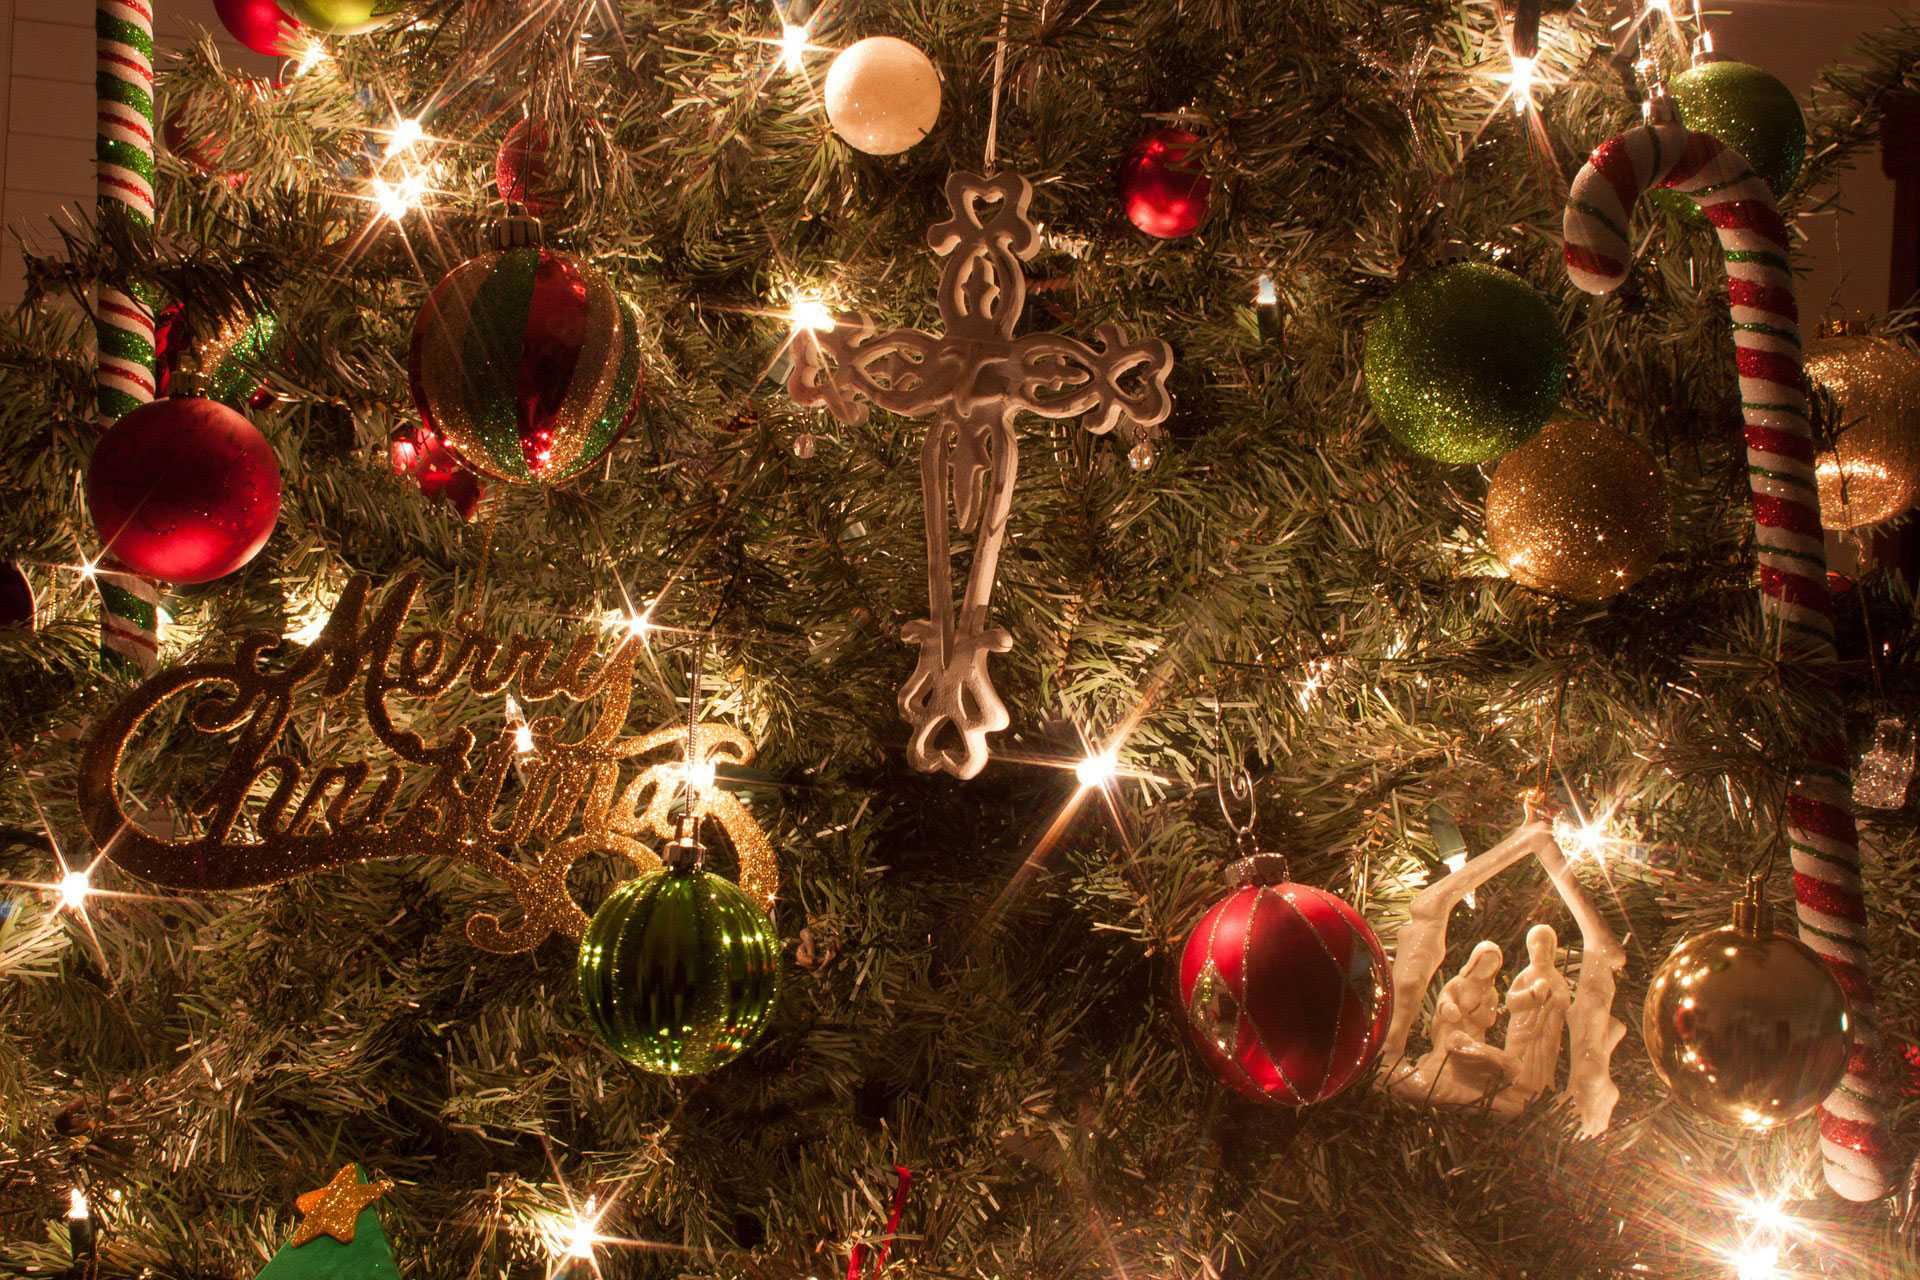 Christmas: The Christian Holiday